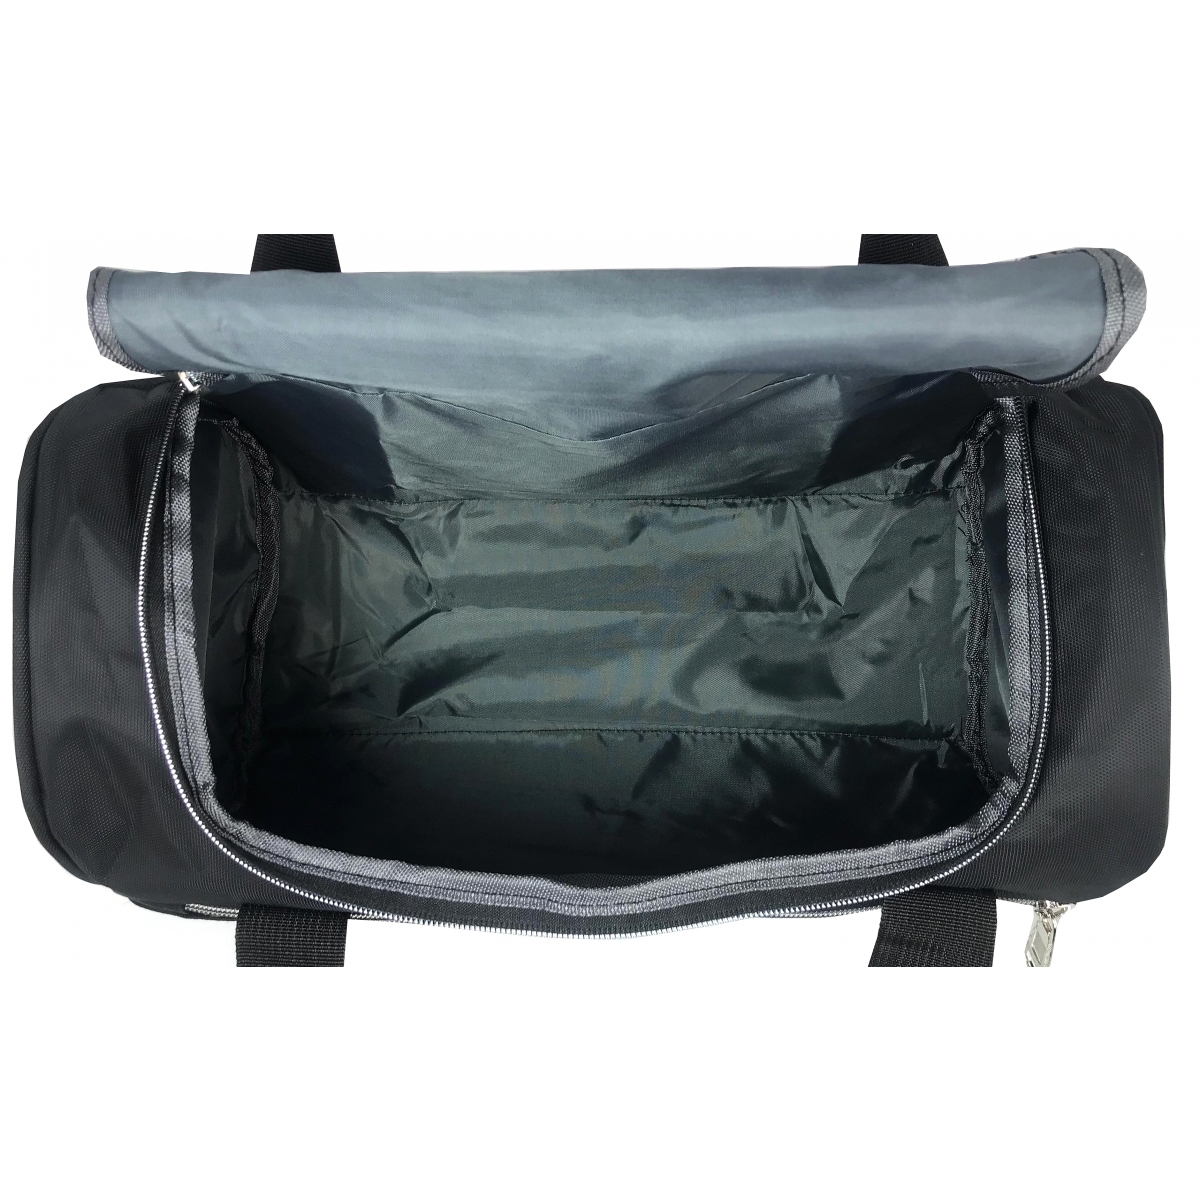 Sac de voyage cuir noir 52-cm FLORIAN sac sport bagages à main